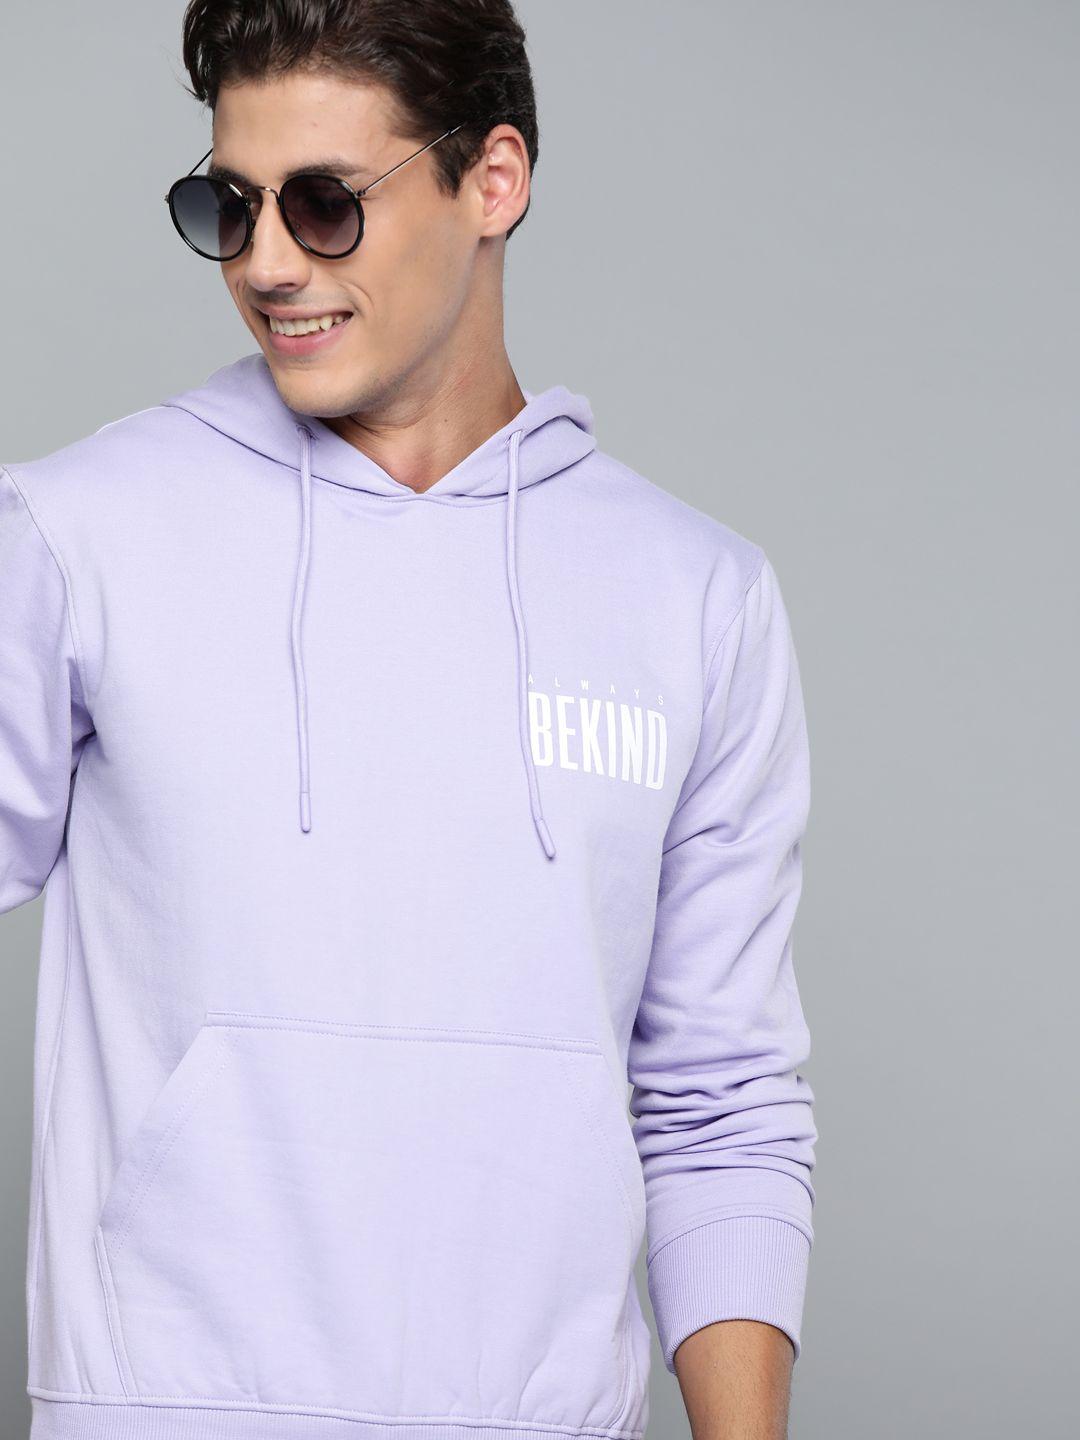 here&now men lavender typography printed hooded sweatshirt